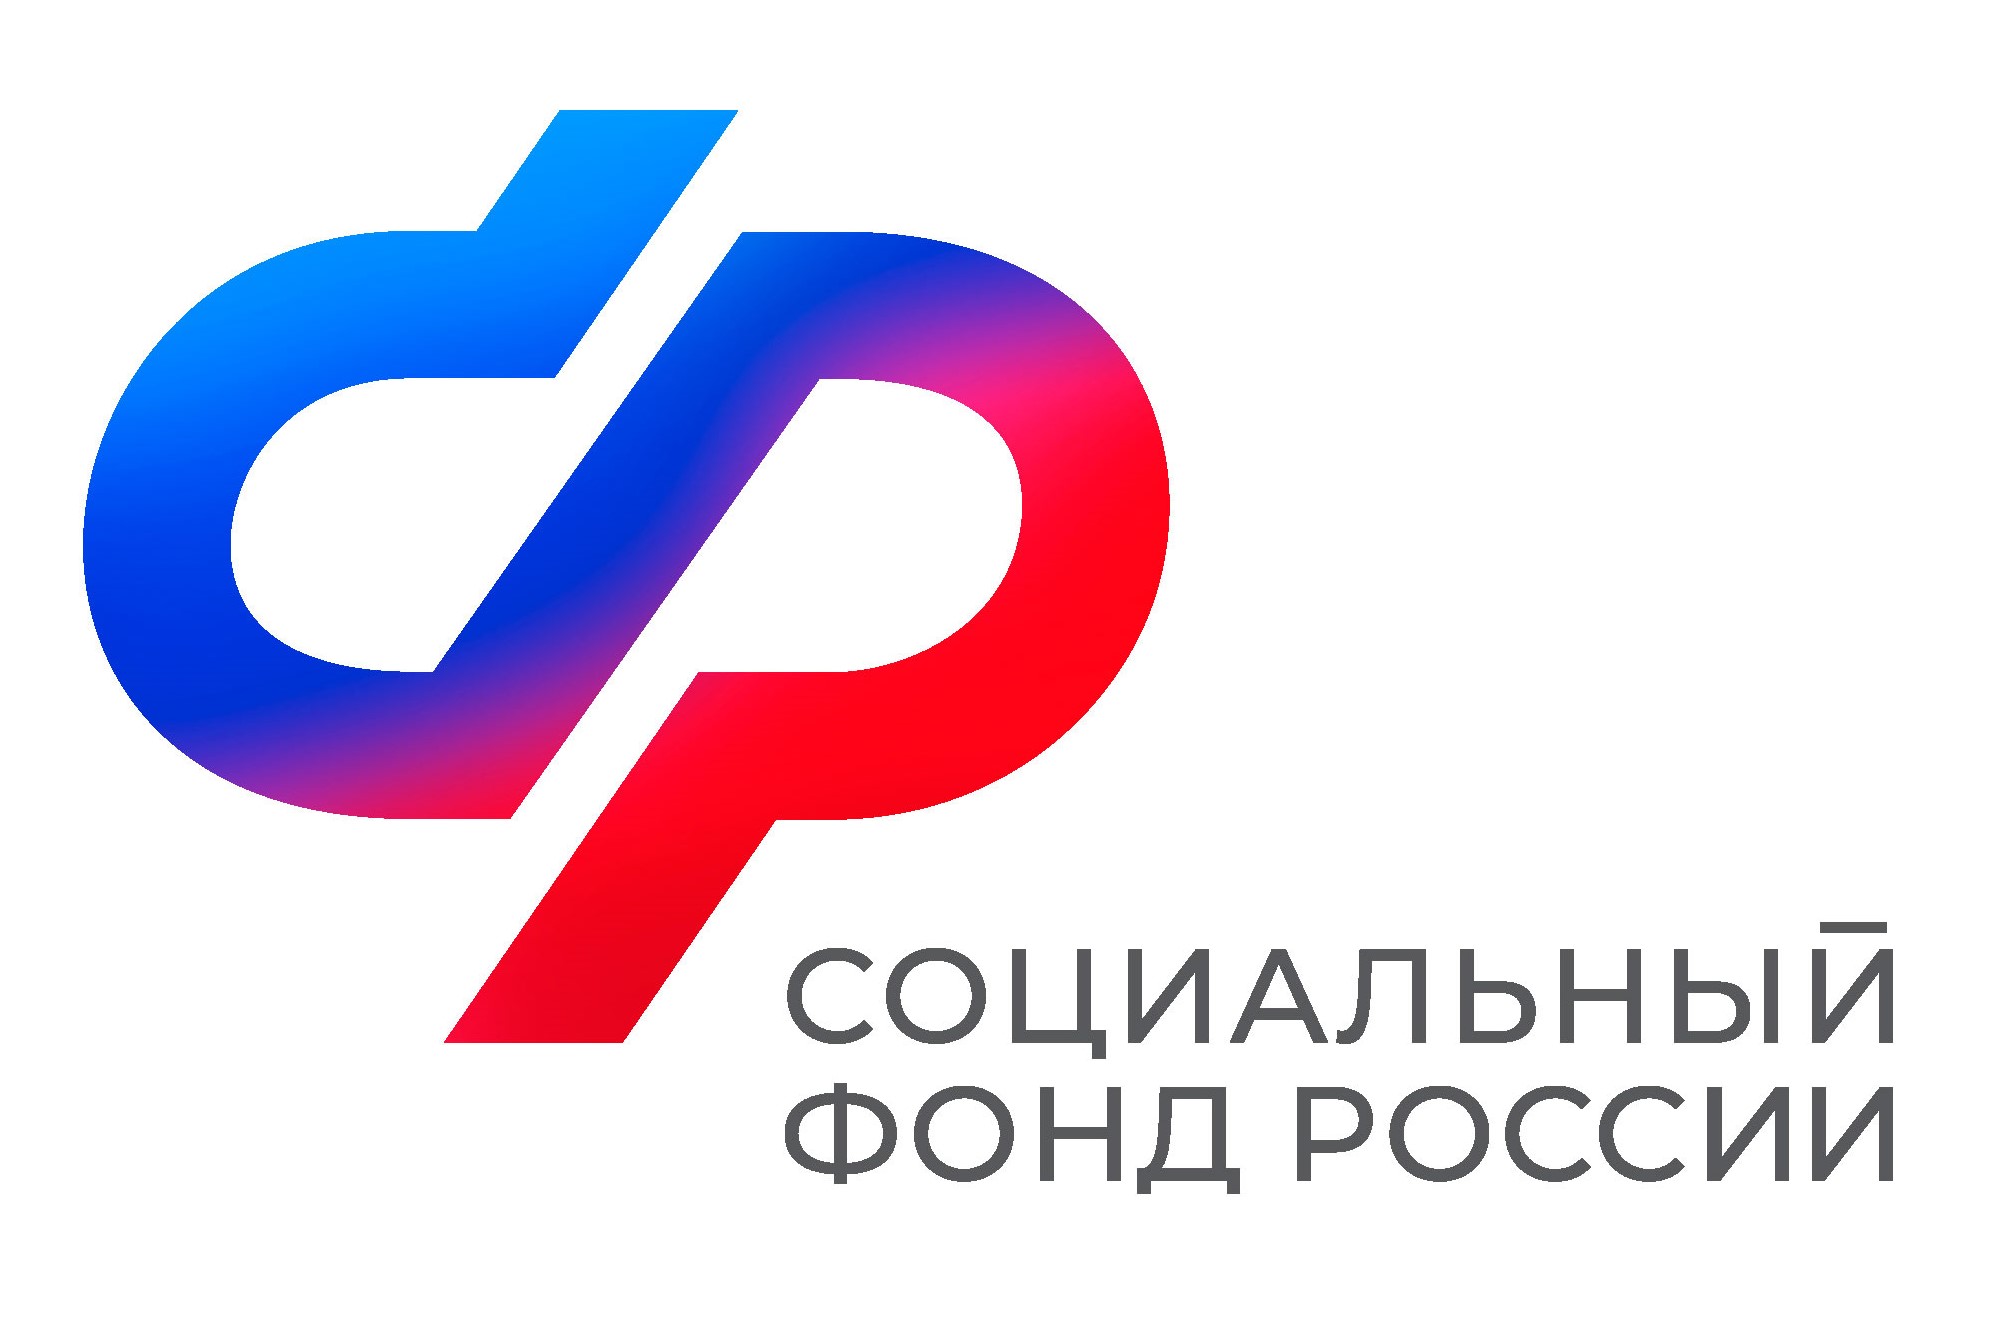 Отделение СФР по Республике Саха (Якутия) сообщает о введении с 1 марта во всех клиентских службах дополнительного рабочего дня